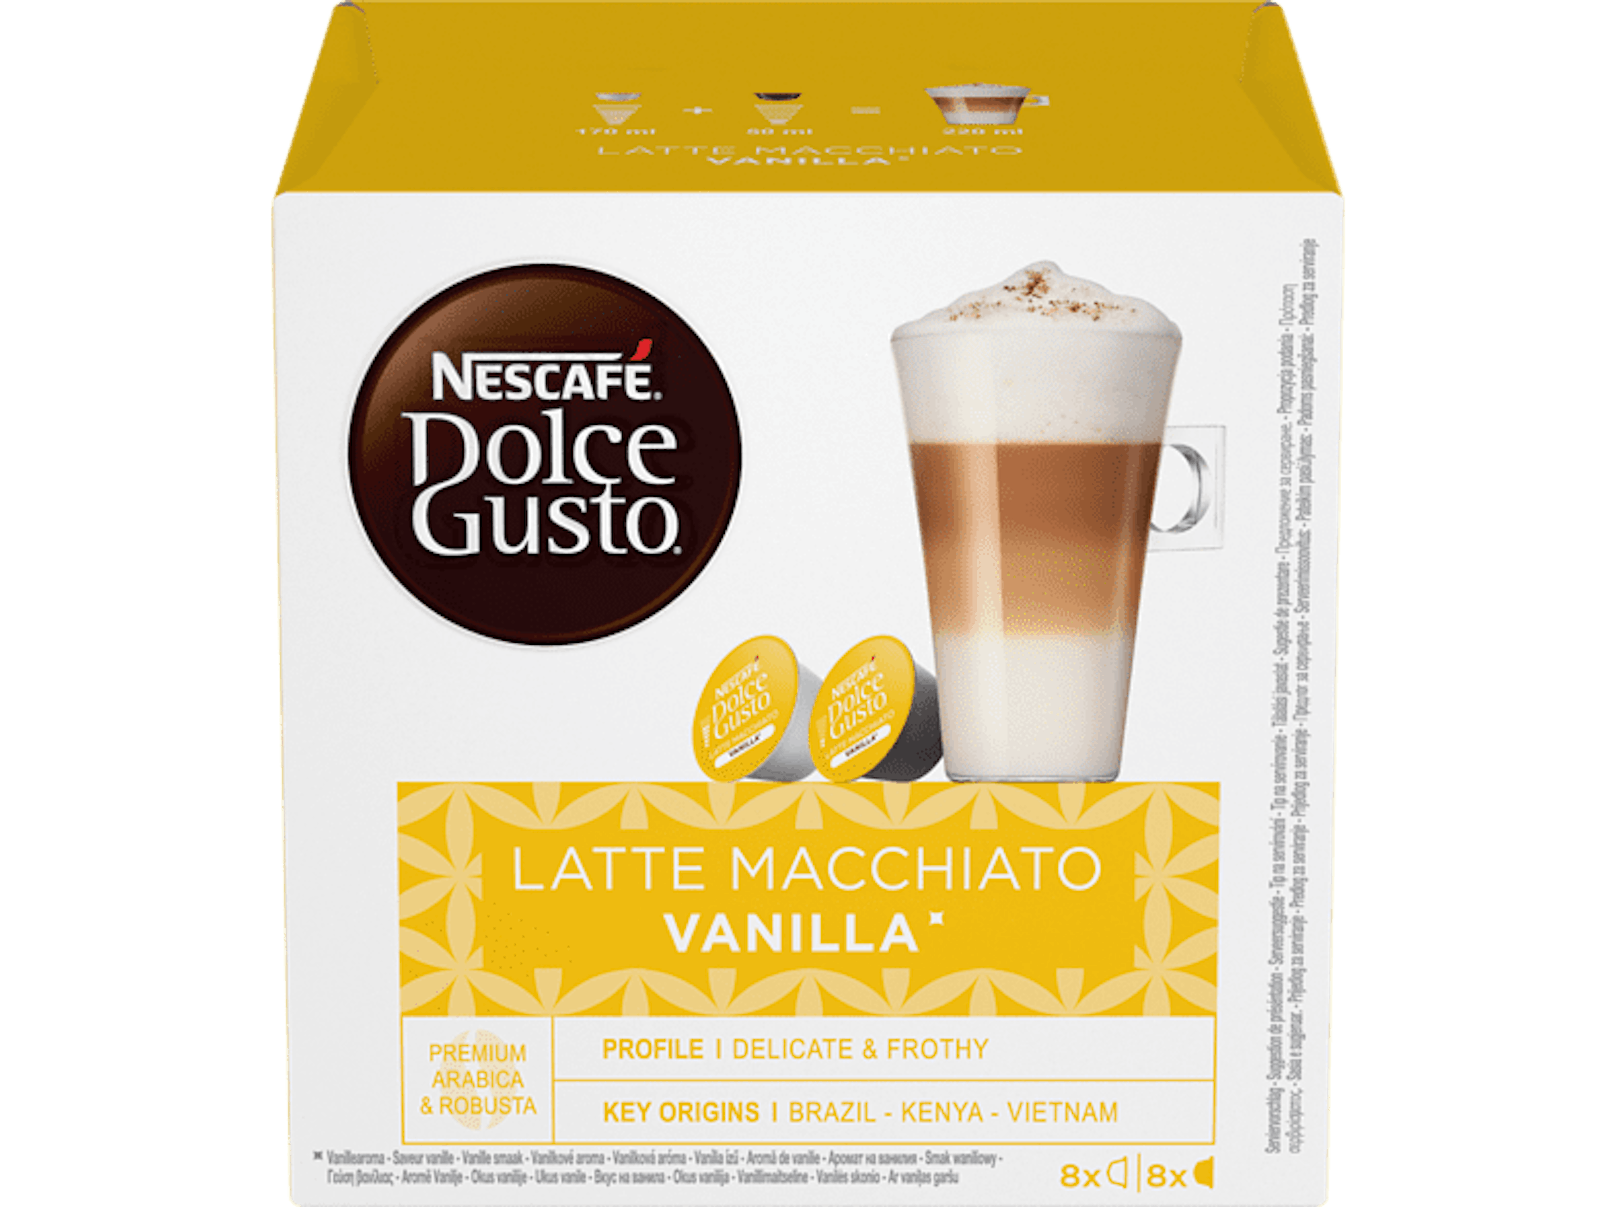 <strong>Dolce Gusto Latte Macchiato Vanilla Kaffeekapseln: </strong>Anstelle der bisherigen 188,4 Gramm Füllmenge pro Kapsel sind jetzt lediglich 153,6 Gramm enthalten. Nach wie vor kostet die Packung aber 4,99 Euro. Auch die empfohlene Menge Kaffee bleibt bei 220 Millilitern.